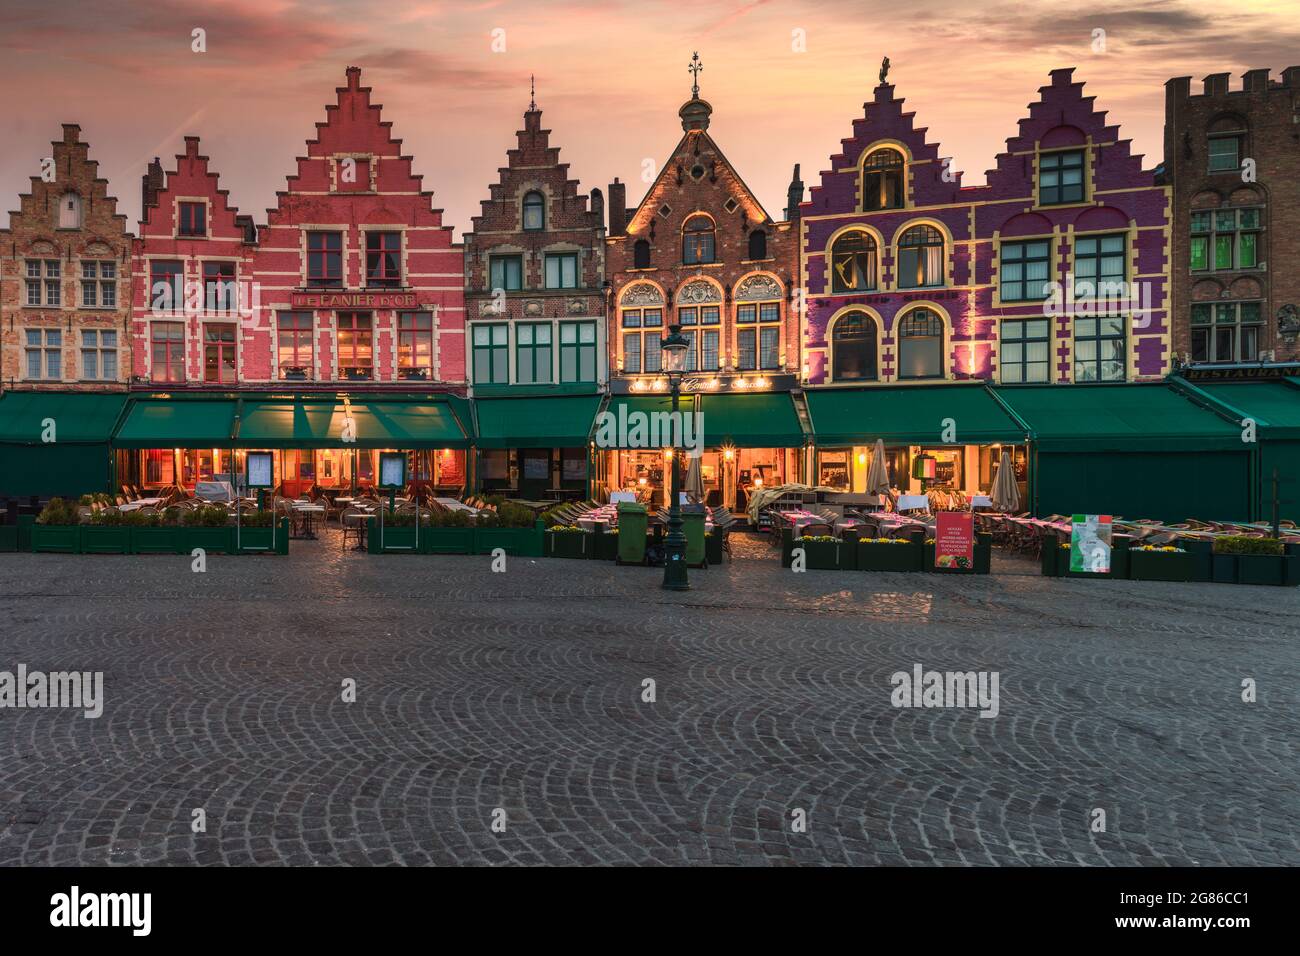 Brujas, Bélgica, 2021 de julio: Vista de las casas antiguas en Markt, plaza del mercado medieval de Brujas en Flandes. Punto de referencia de Bélgica. Foto de stock